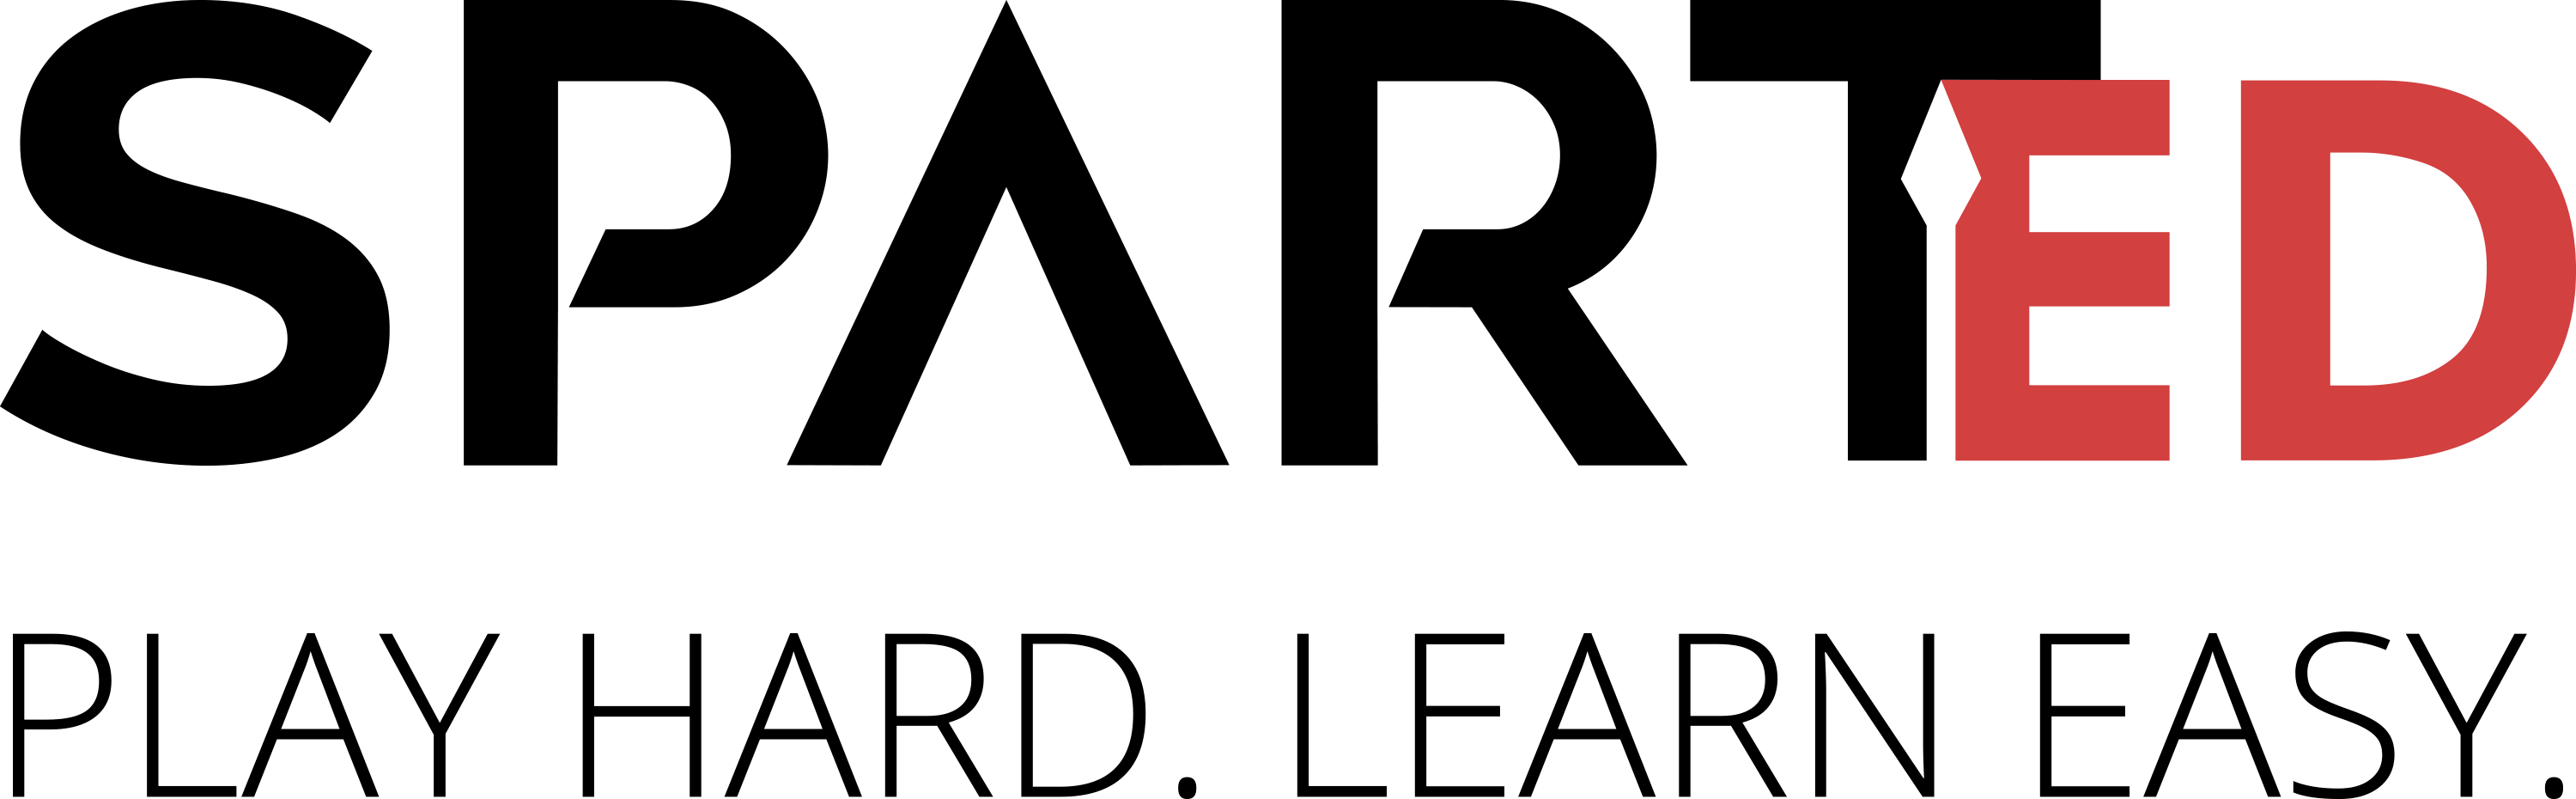 SPARTED - logo-baseline-black